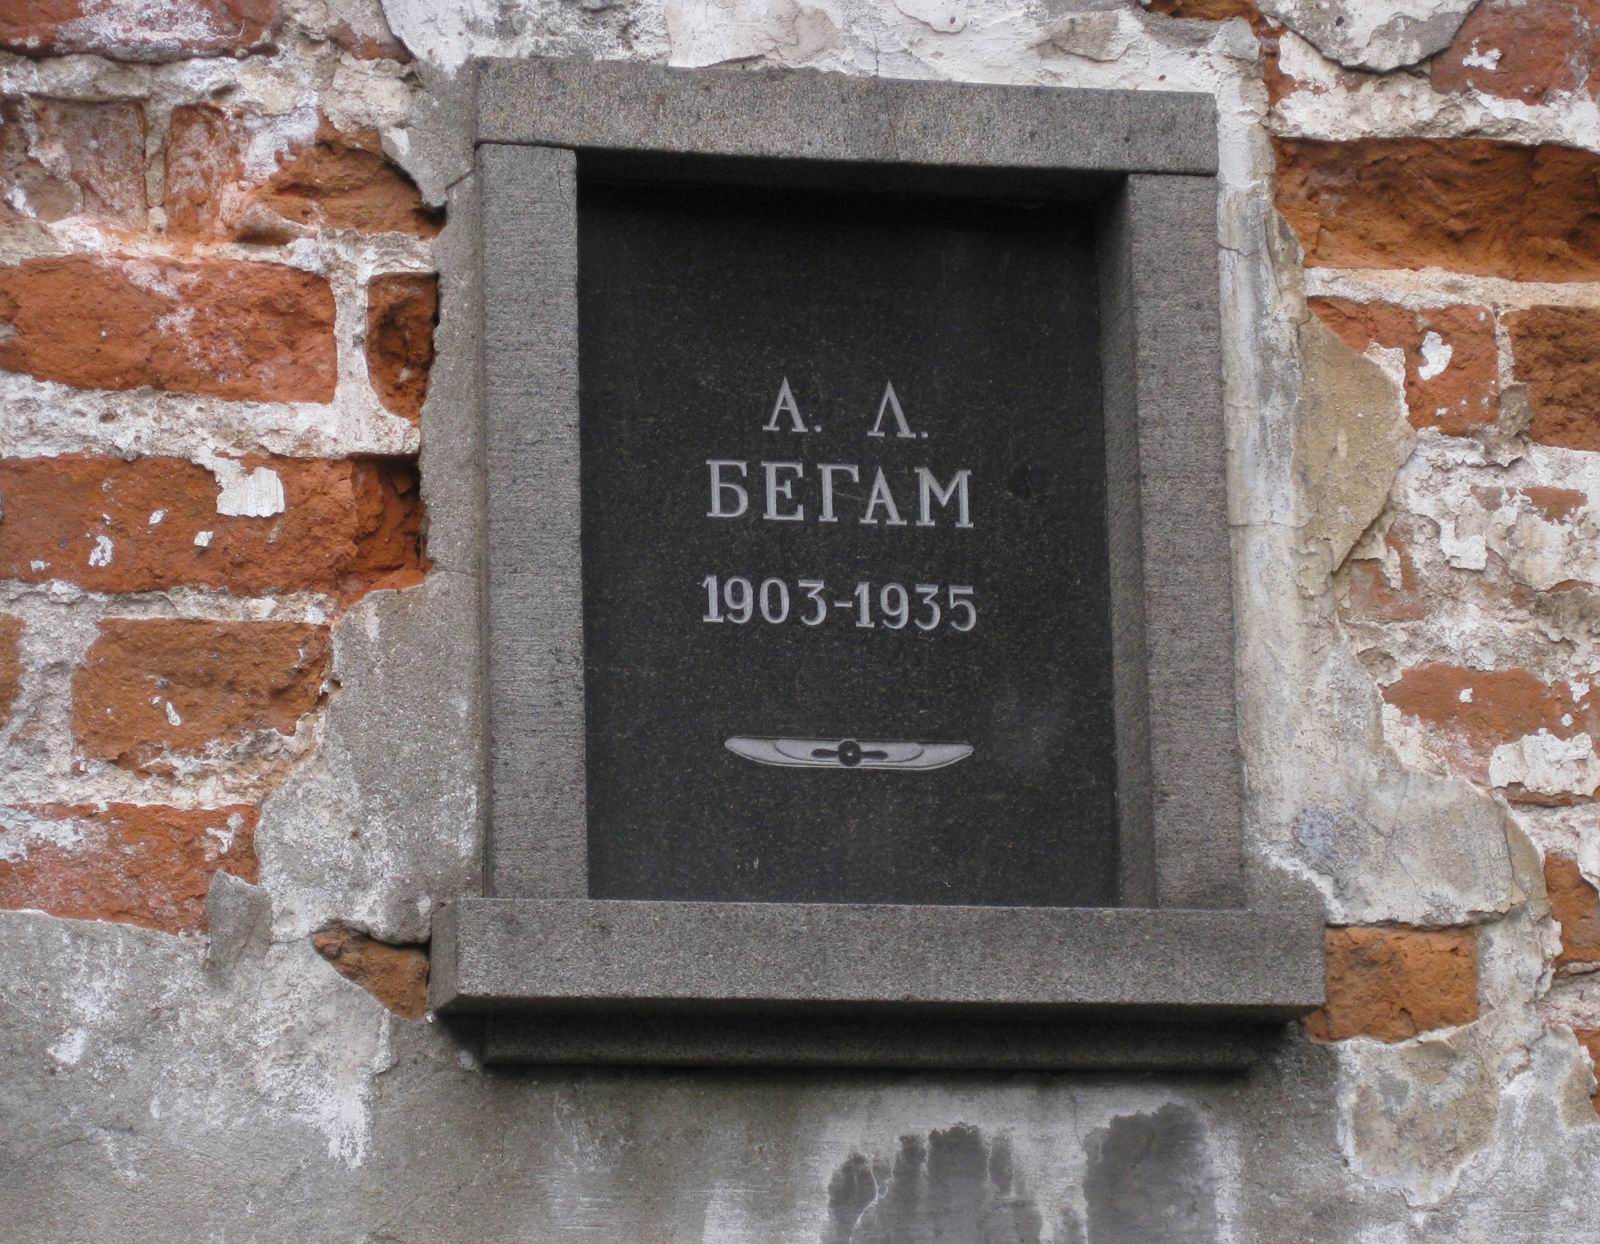 Плита на нише Бегама А.Л. (1903-1935), на Новодевичьем кладбище (колумбарий [3]-9), до 2015. Нажмите левую кнопку мыши, чтобы увидеть общий вид секции.